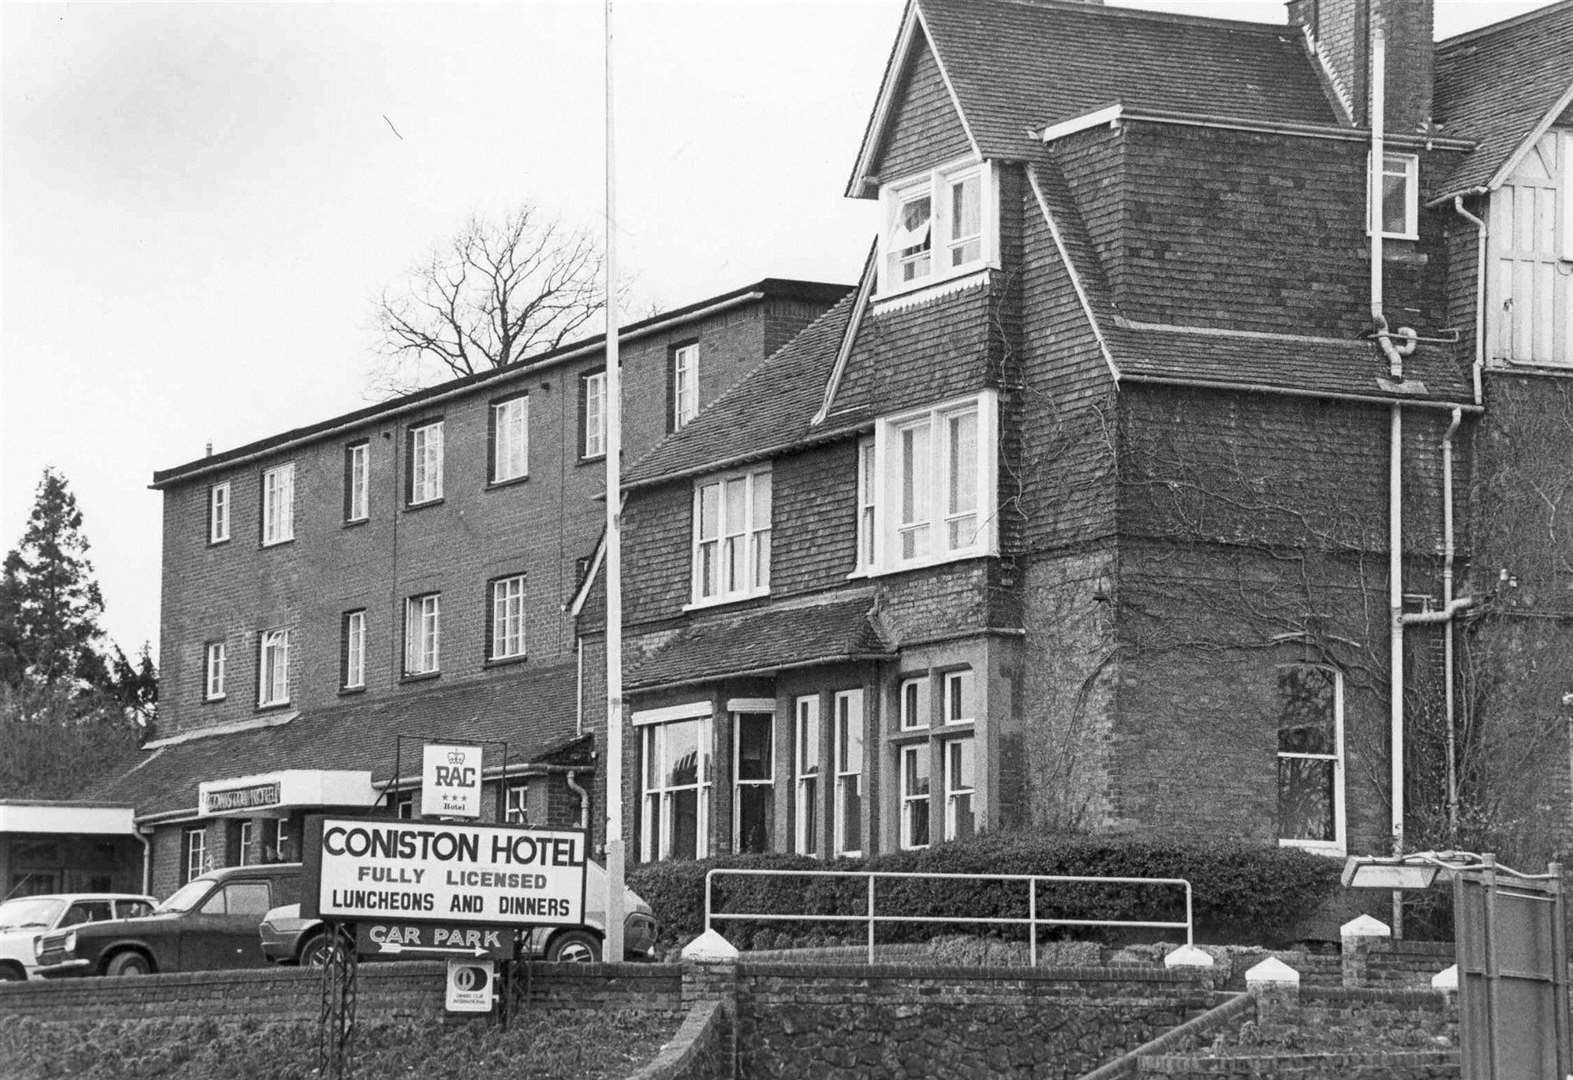 The Coniston Hotel in Sittingbourne - February 1986